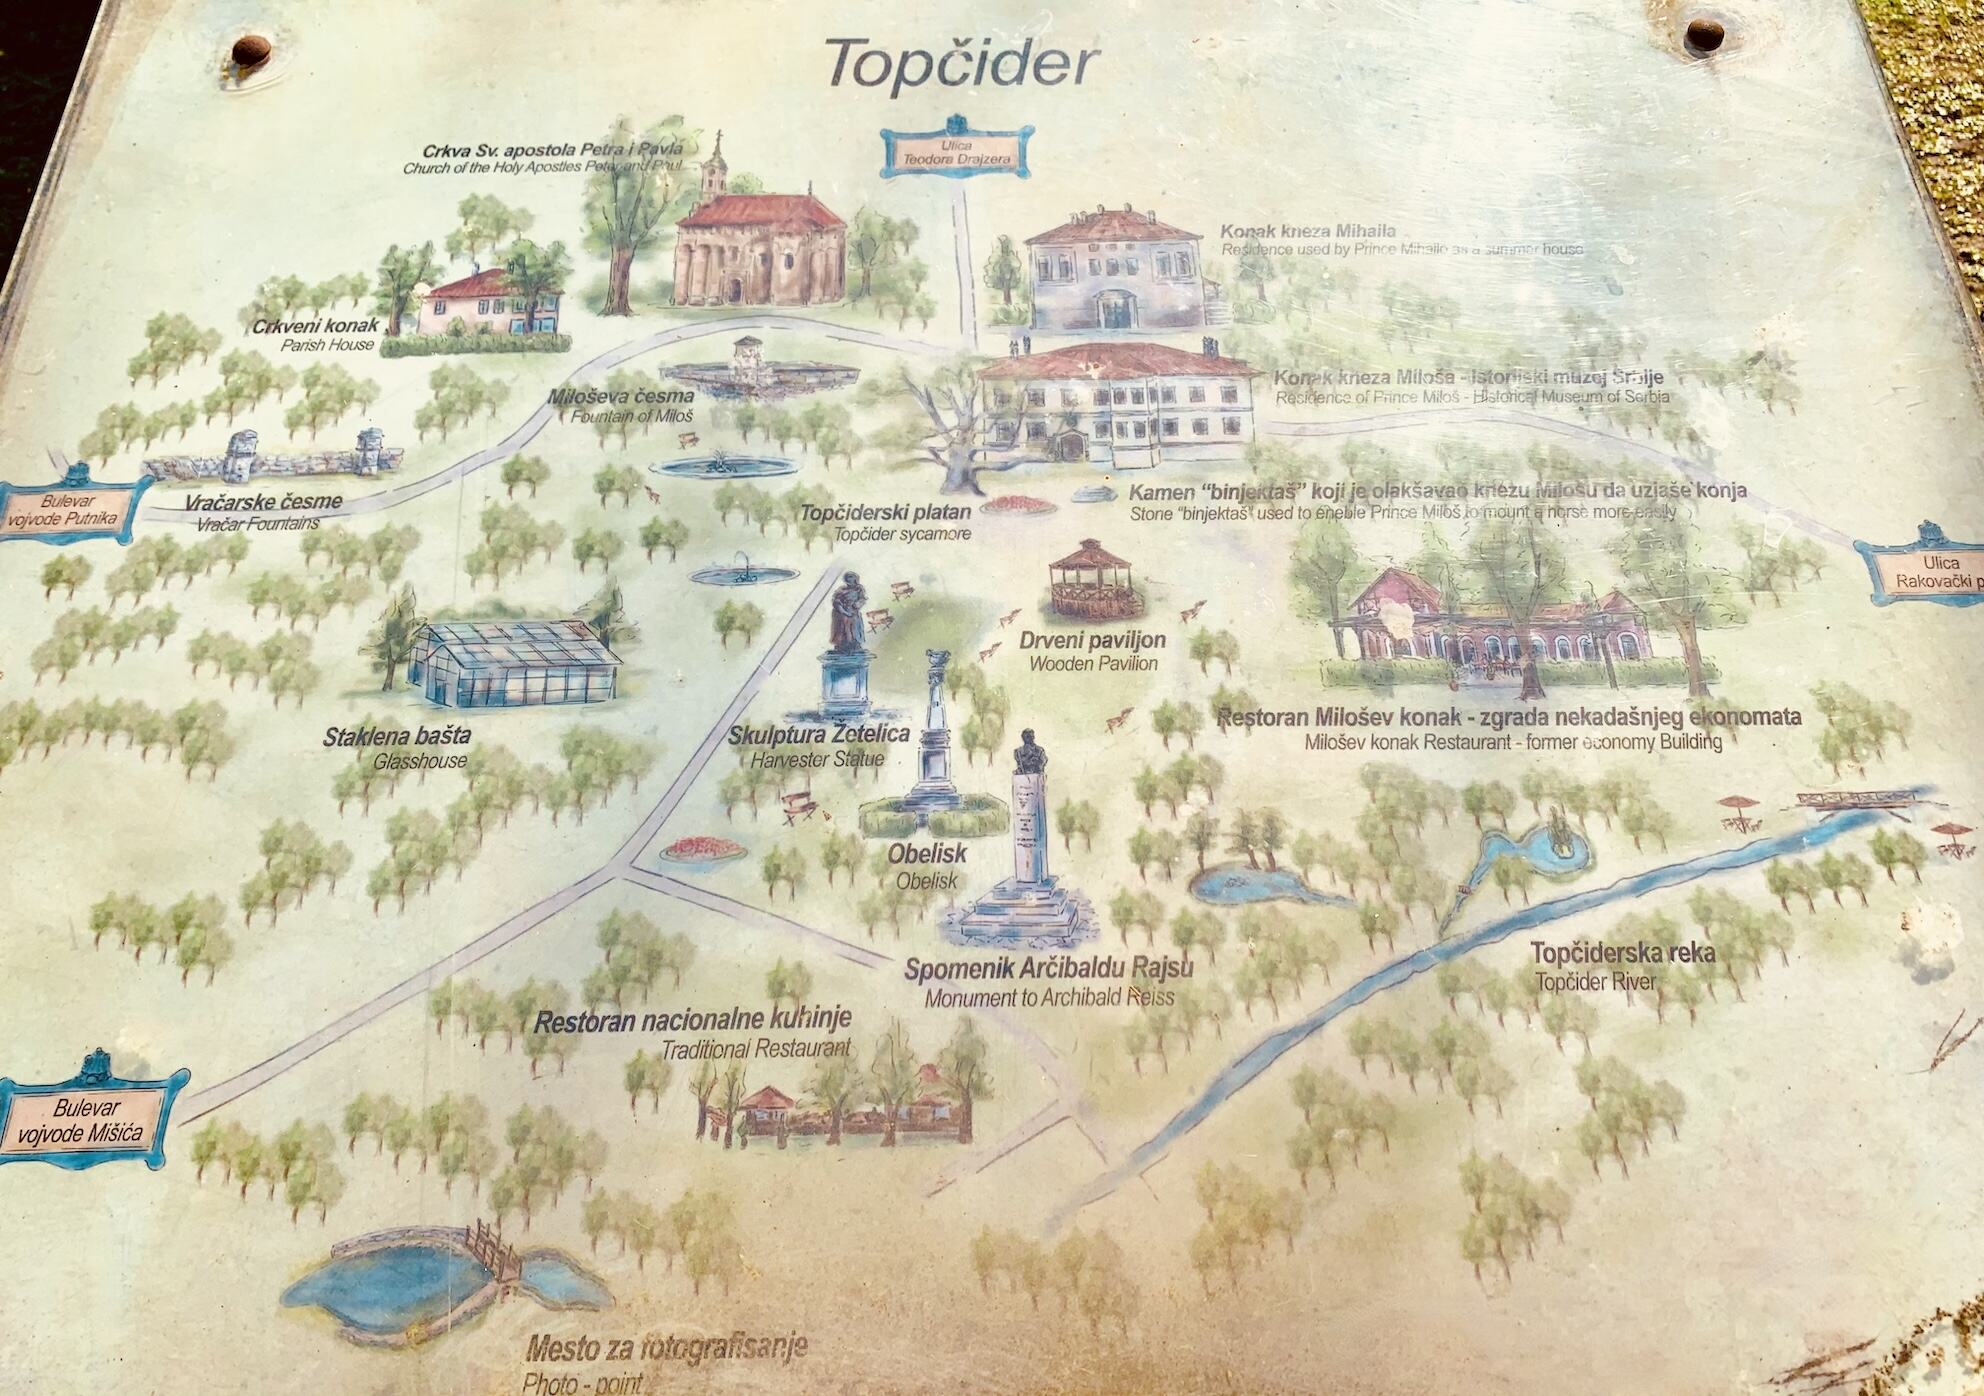 Map of Topcider Park in Belgrade.